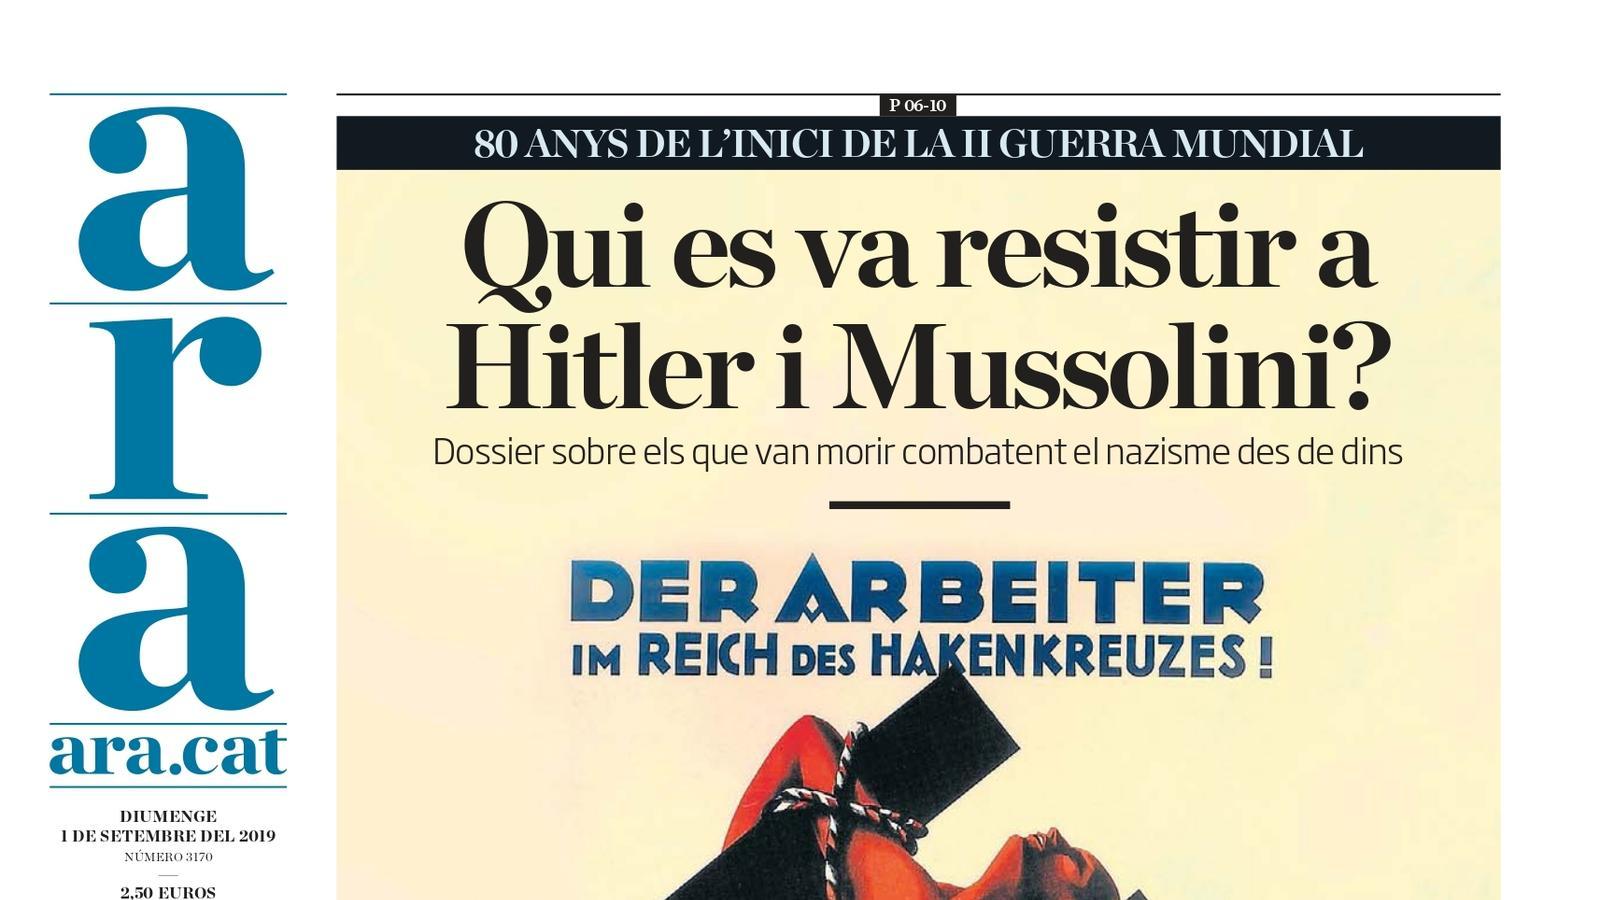 "Qui es va resistir a Hitler i Mussolini?", la portada de l'ARA